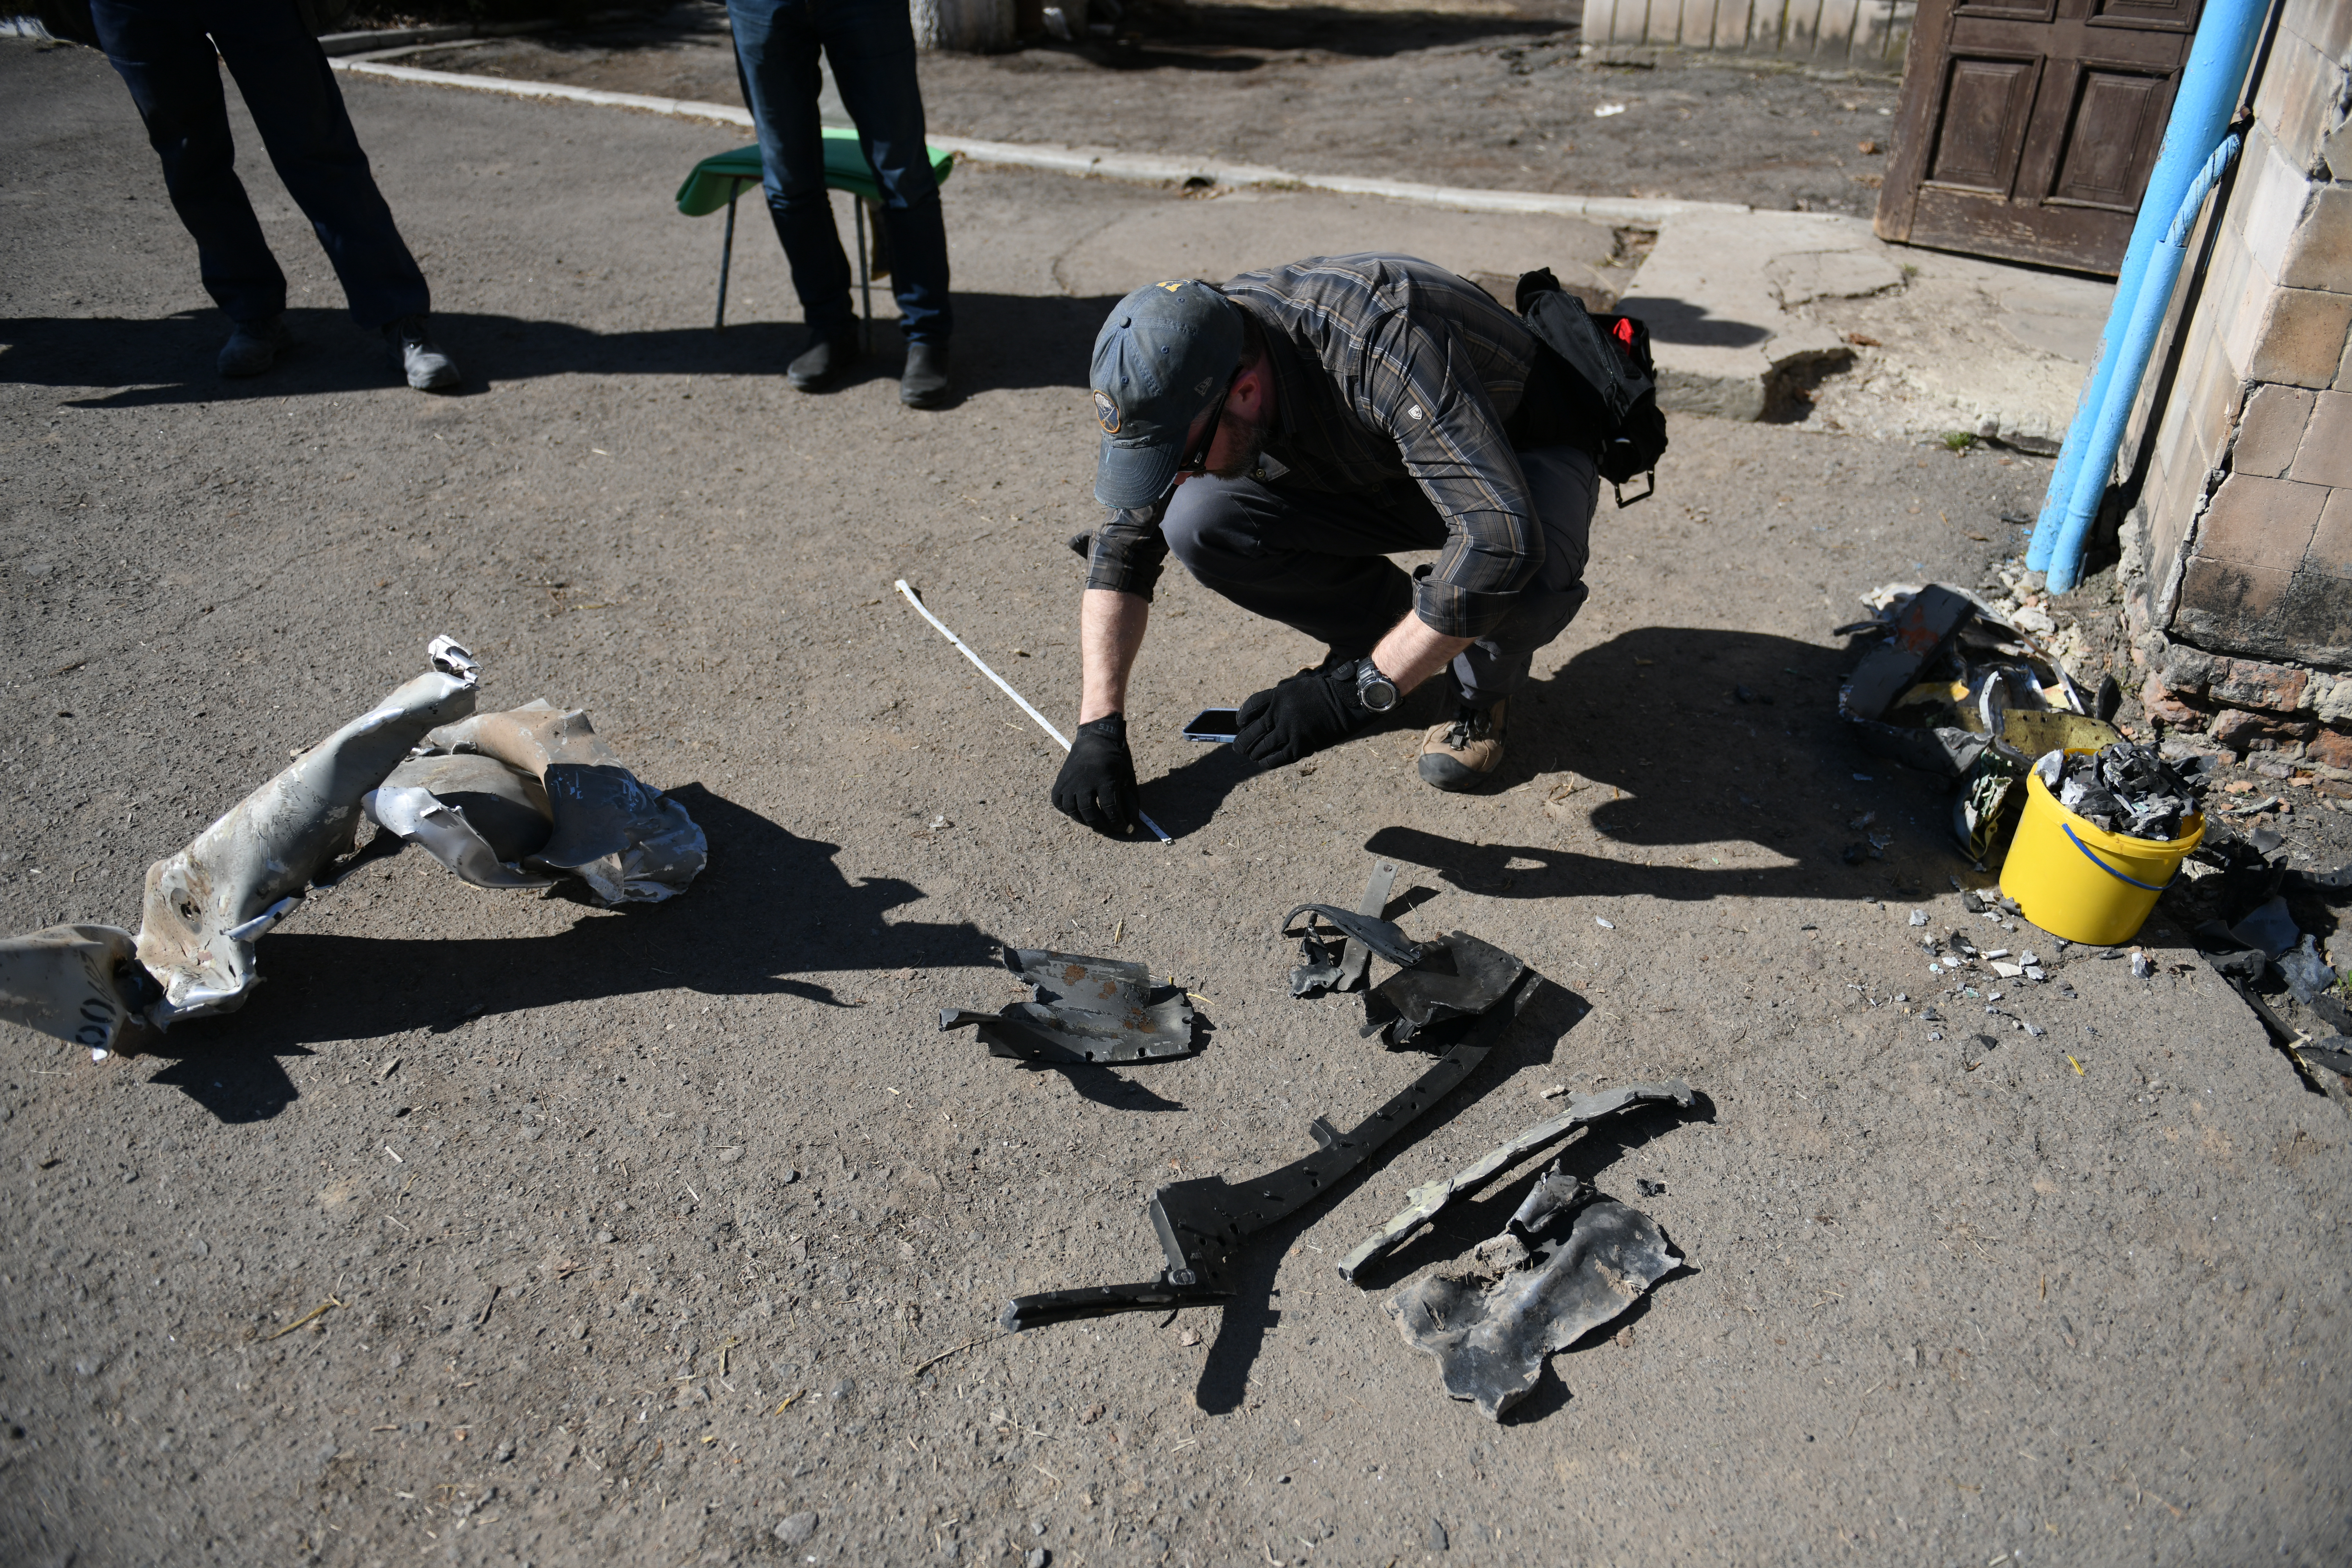 Brian Castner, Waffenexperte von Amnesty International, untersucht in der Ukraine zurückgelassene Waffenteile und dokumentiert die Situation. | Olga Ivashchenko/Amnesty International